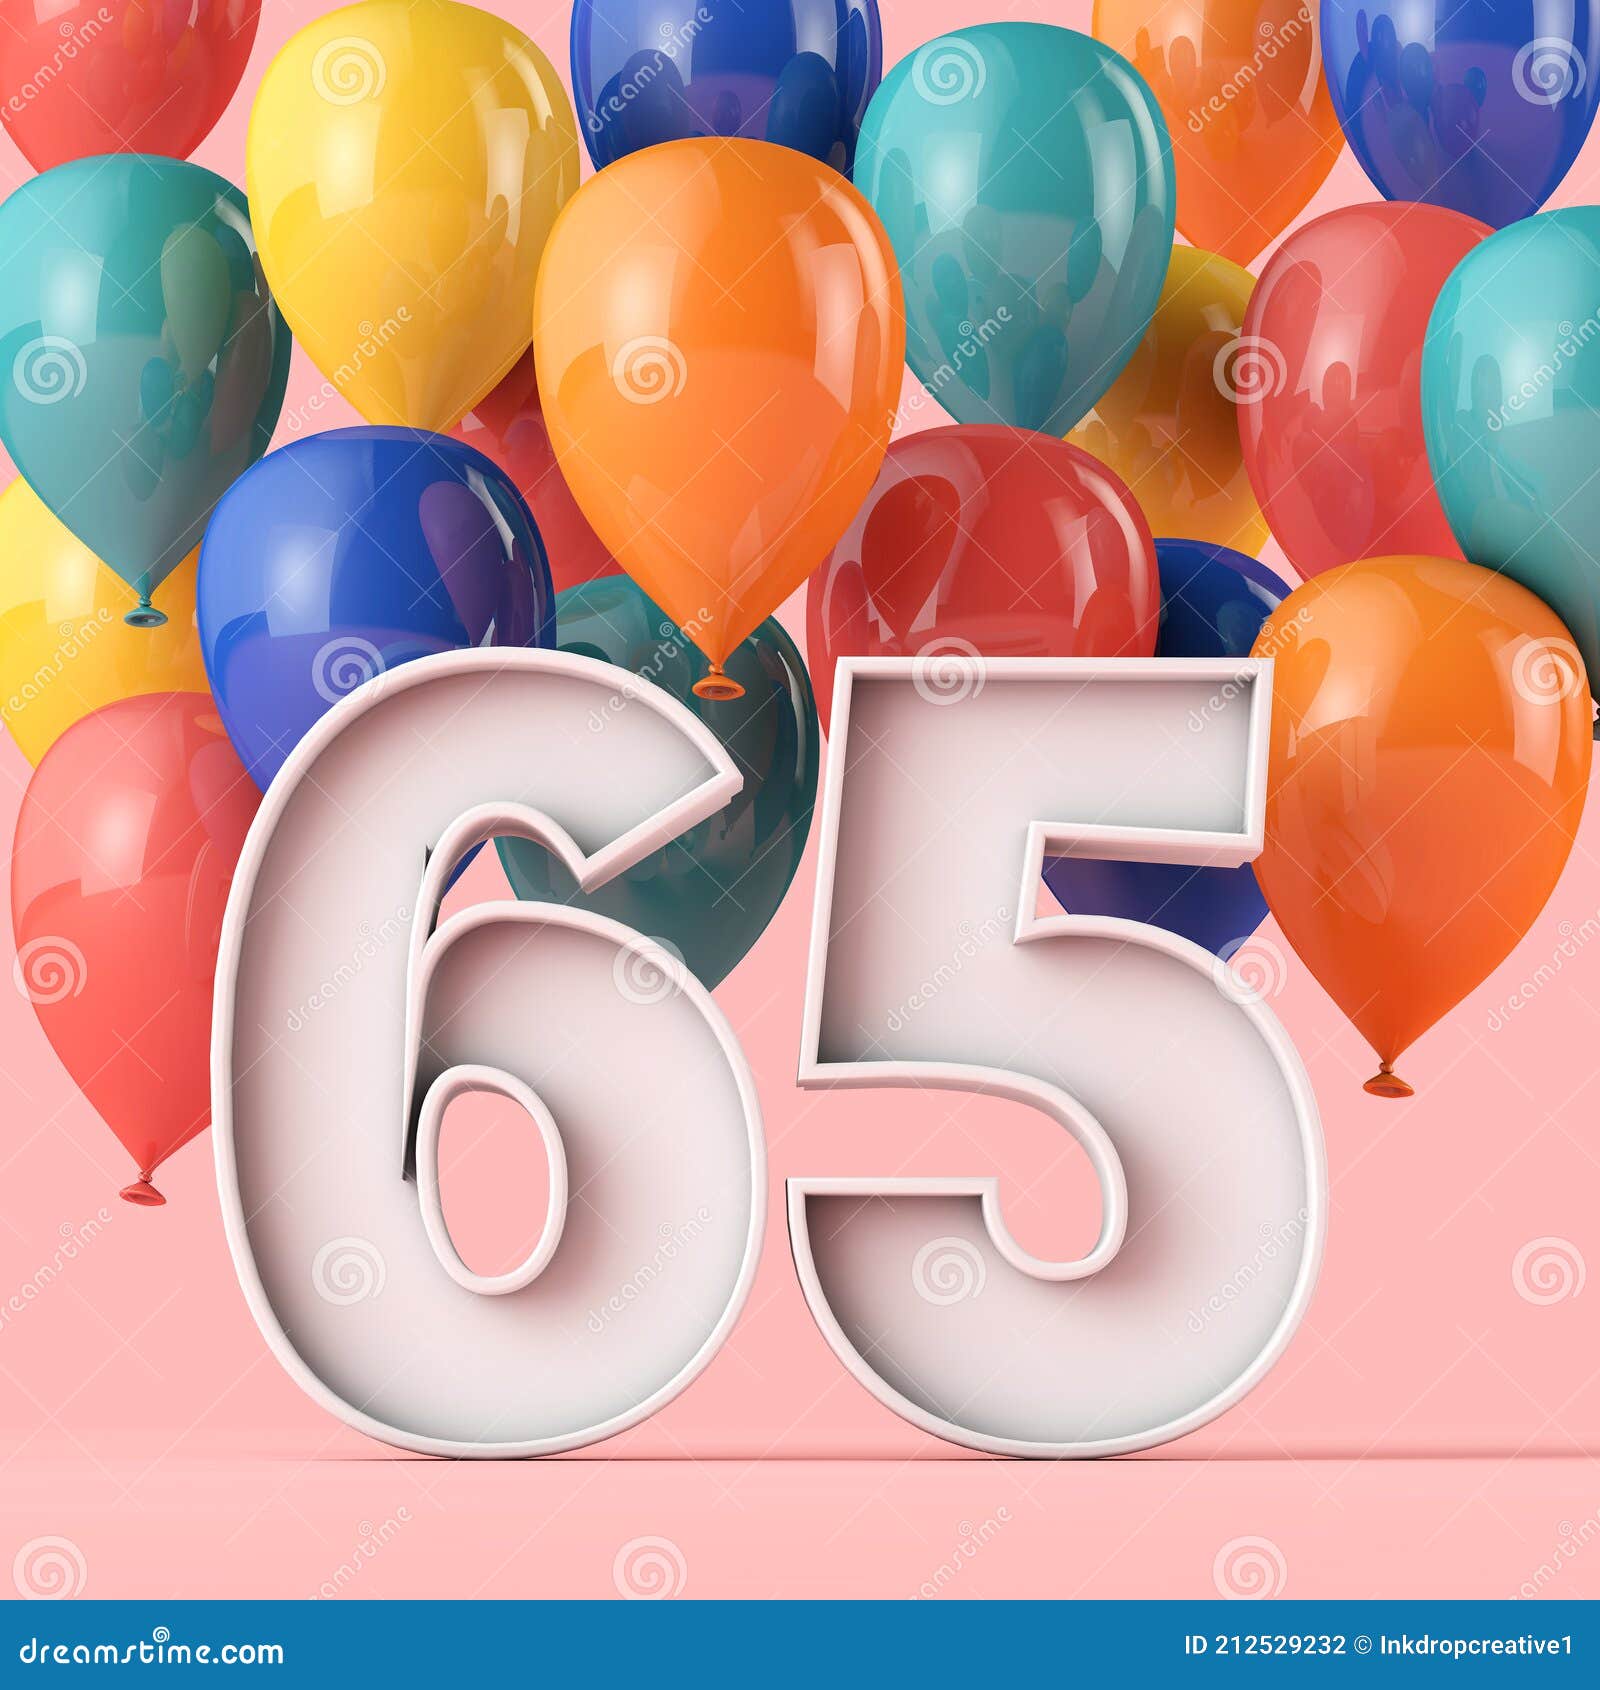 Hình ảnh về nền đẹp sinh nhật lần thứ 65 sẽ khiến bạn cảm thấy vui vẻ và cảm thấy quý giá hơn. Hãy cùng đón chào sinh nhật lần thứ 65 của mình bằng món quà đặc biệt này.